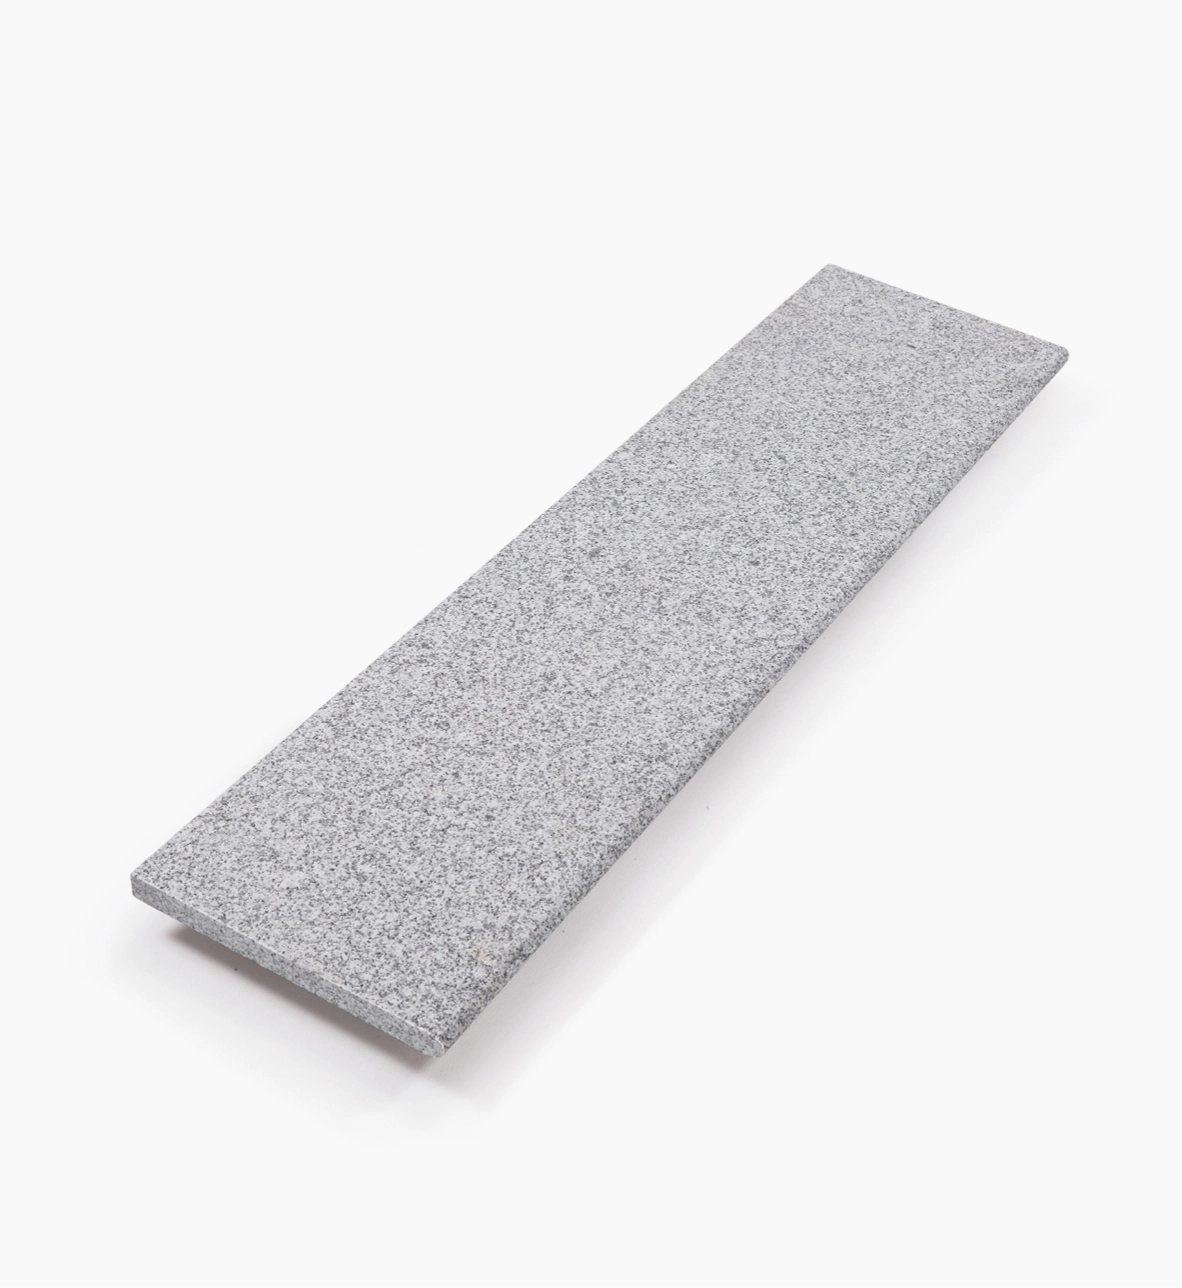 Stufenplatte Kristall grau 100 x 35 x 6 cm allseits gesägt und geflammt, Kanten gefast